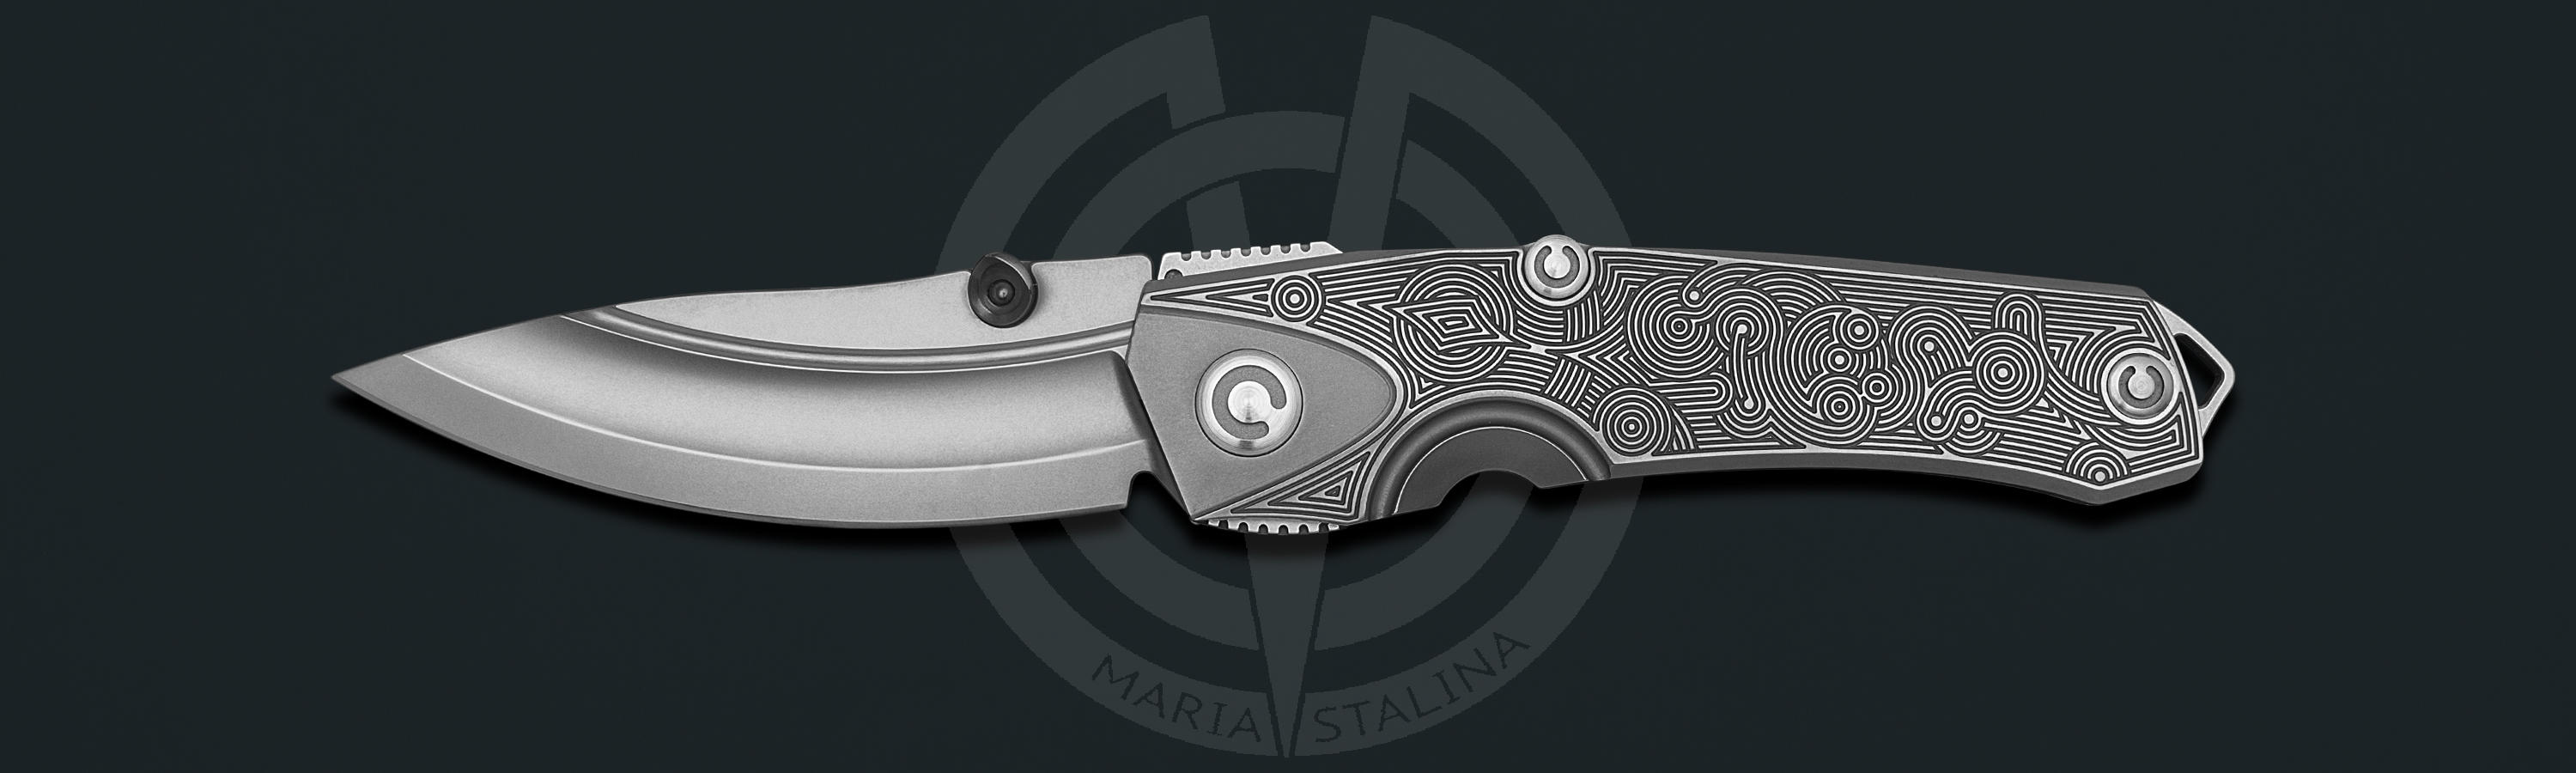 Rhino TA 4/5 knife